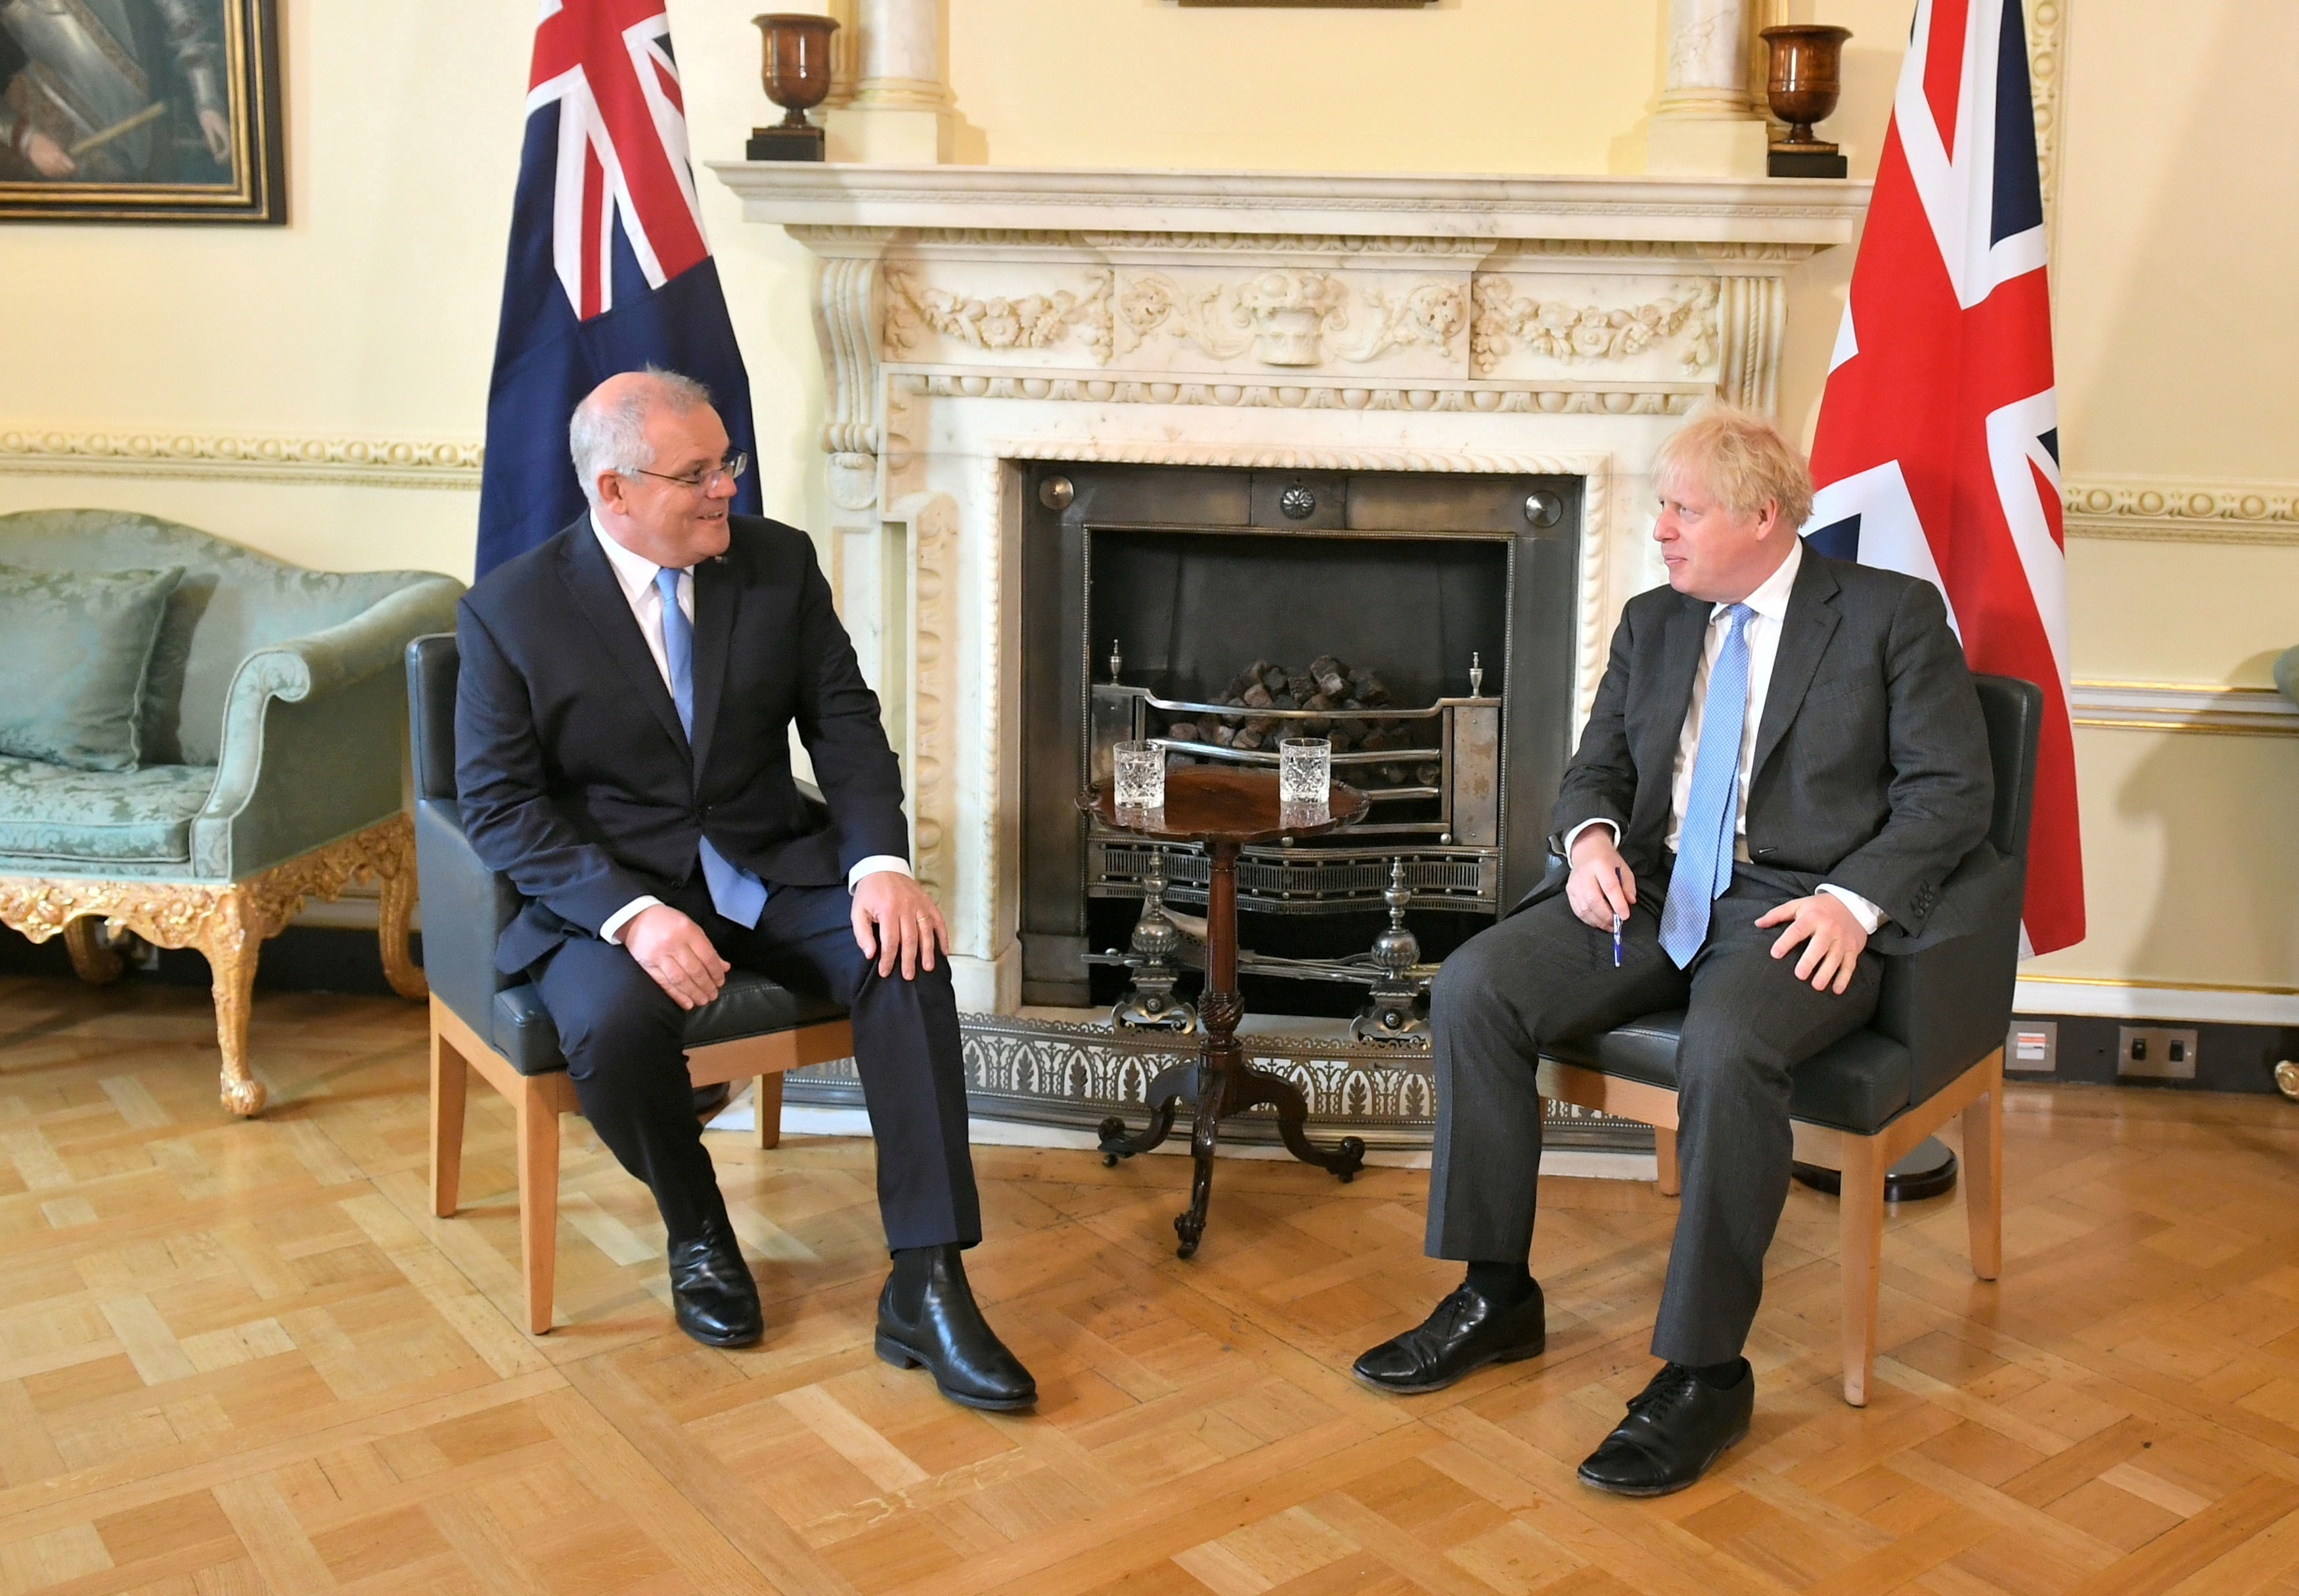 El primer ministro británico, Boris Johnson, y su homólogo australiano, Scott Morrison, hablan en el número 10 de Downing Street, antes de una reunión para anunciar formalmente un acuerdo comercial, en Londres, Reino Unido, el 15 de junio de 2021. Dominic Lipinski / Pool vía REUTERS